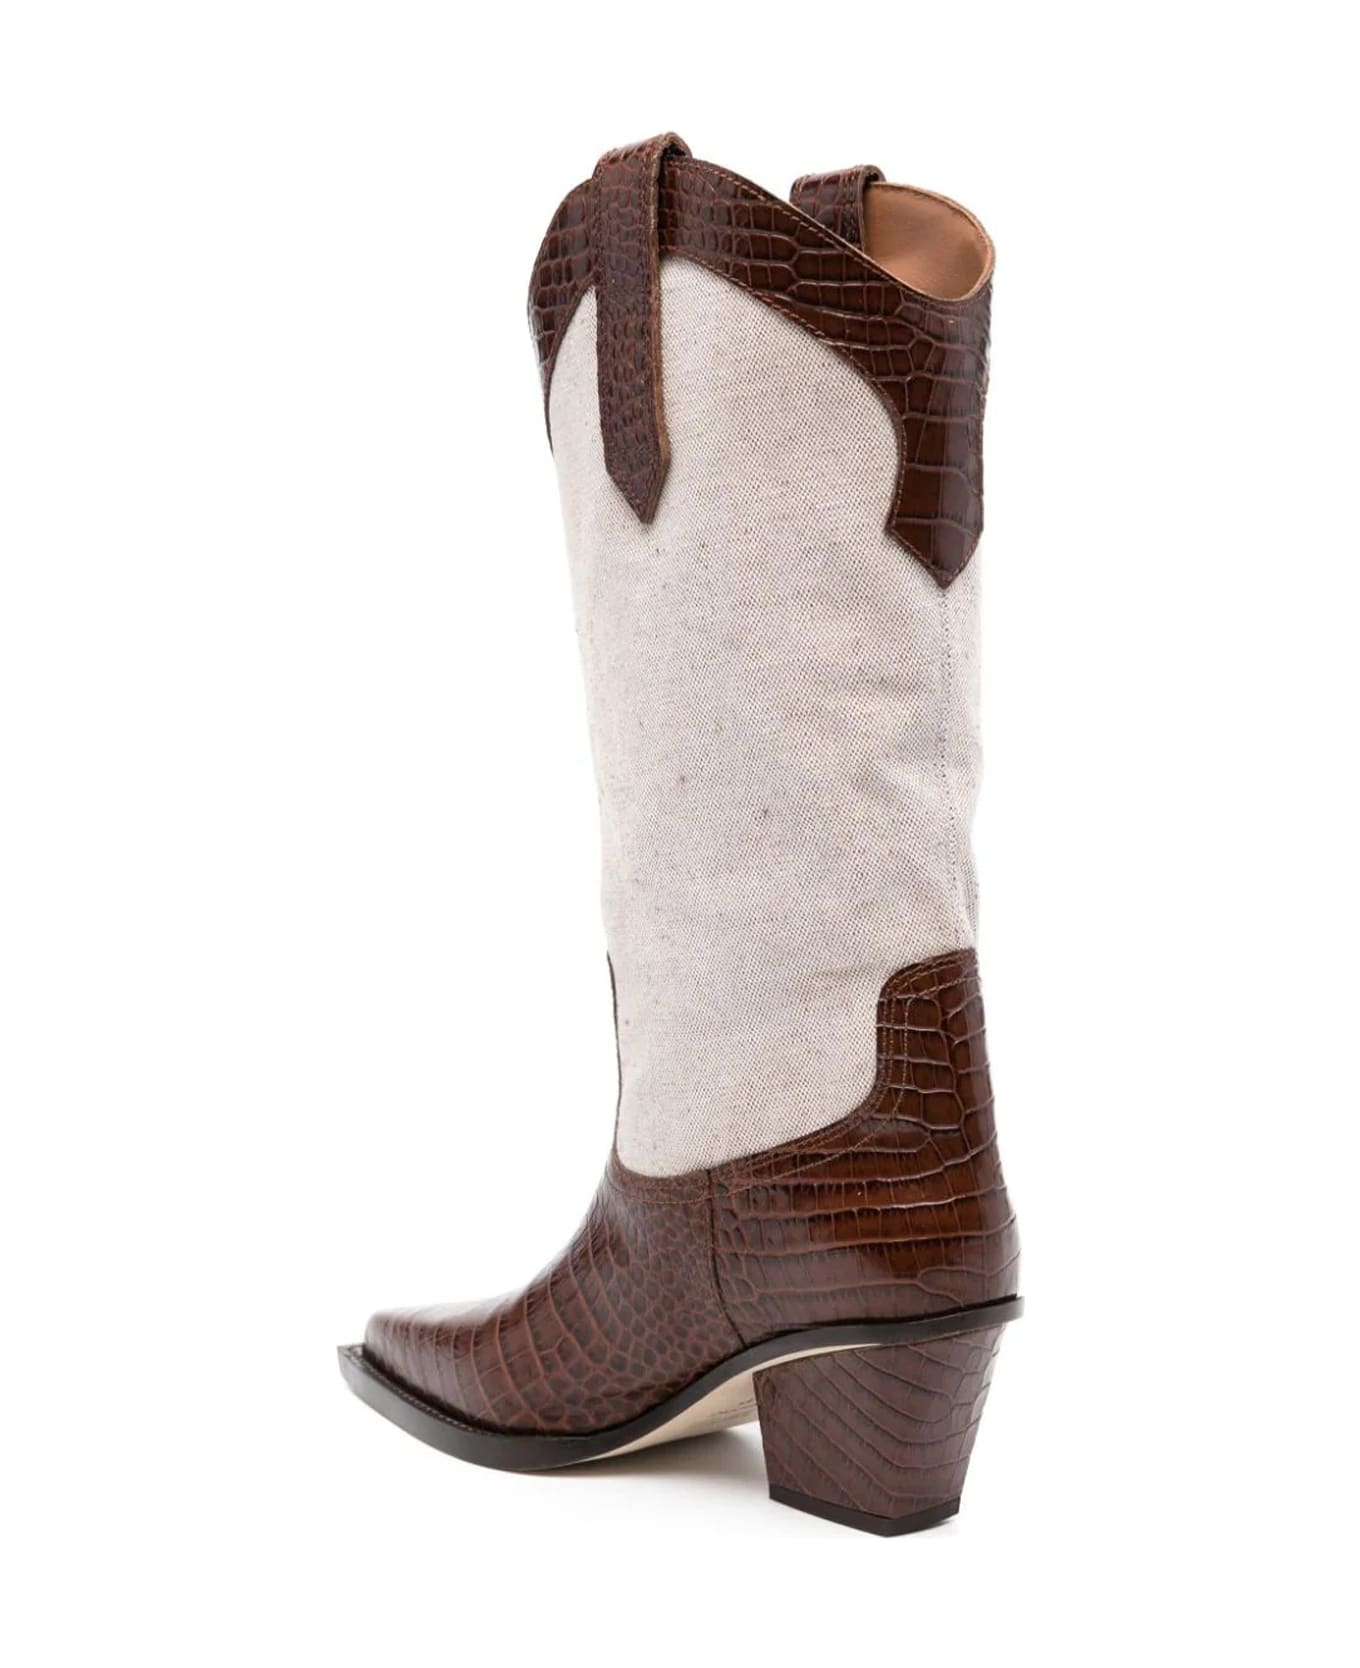 Paris Texas Boots - Brown ブーツ